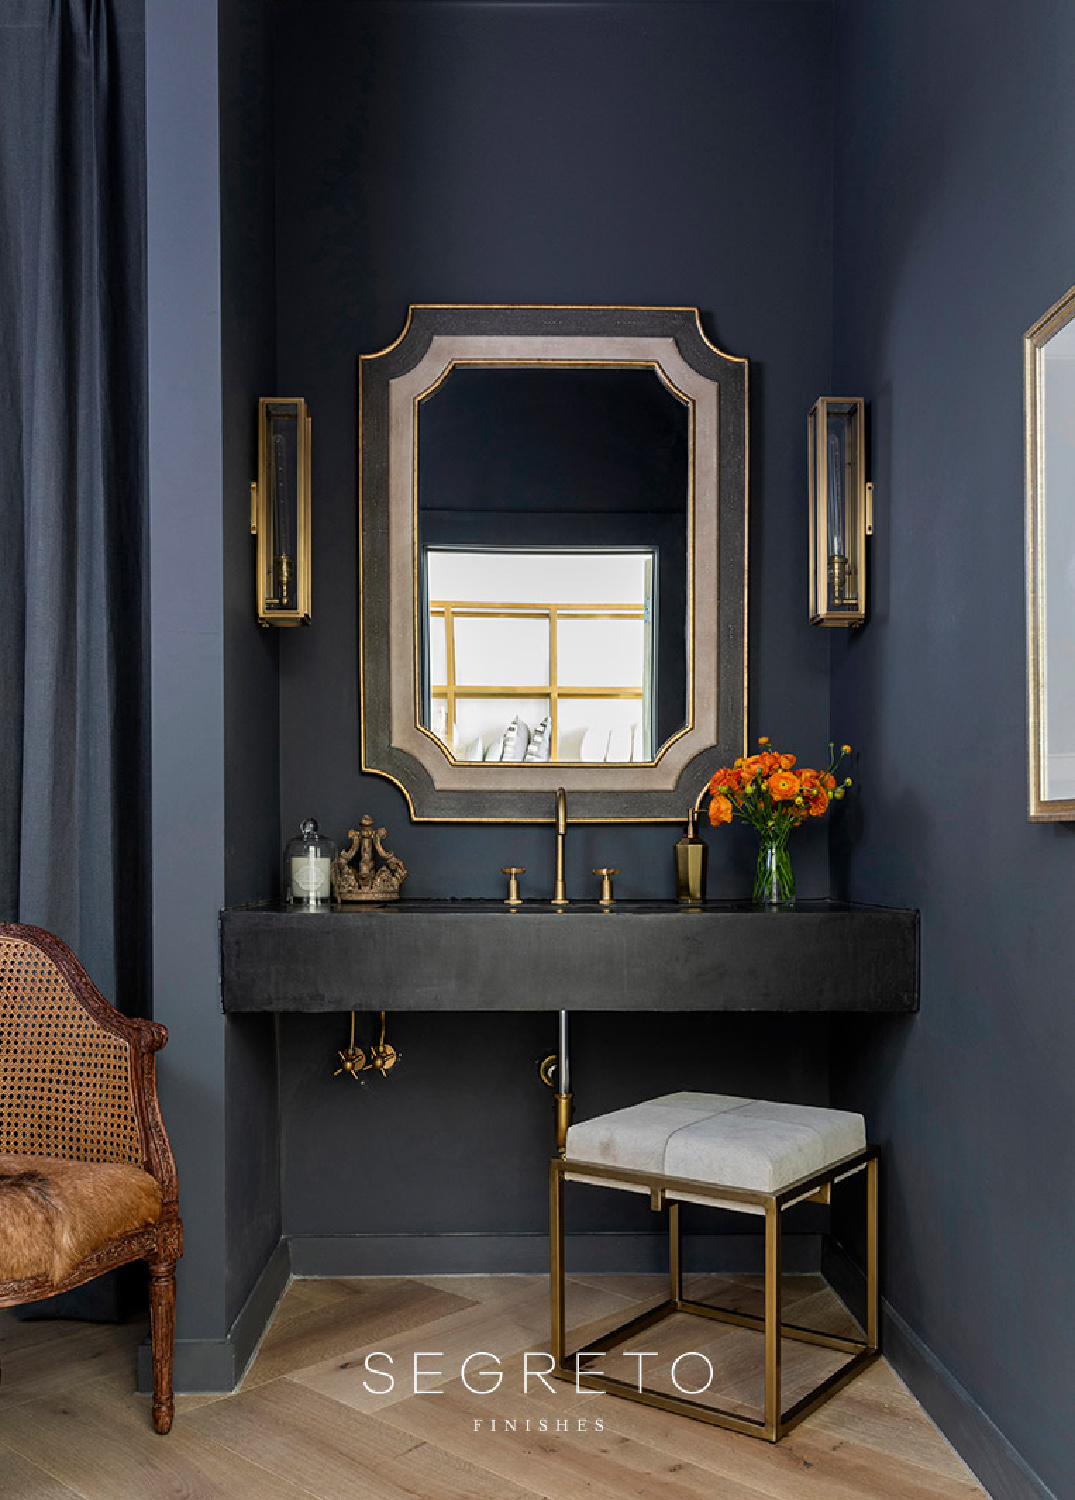 Elegant and moody slate blue powder room bath with impeccable finishes - Segreto Finishes. #slateblue #powderrooms #oldworldstyle #sophisticateddecor